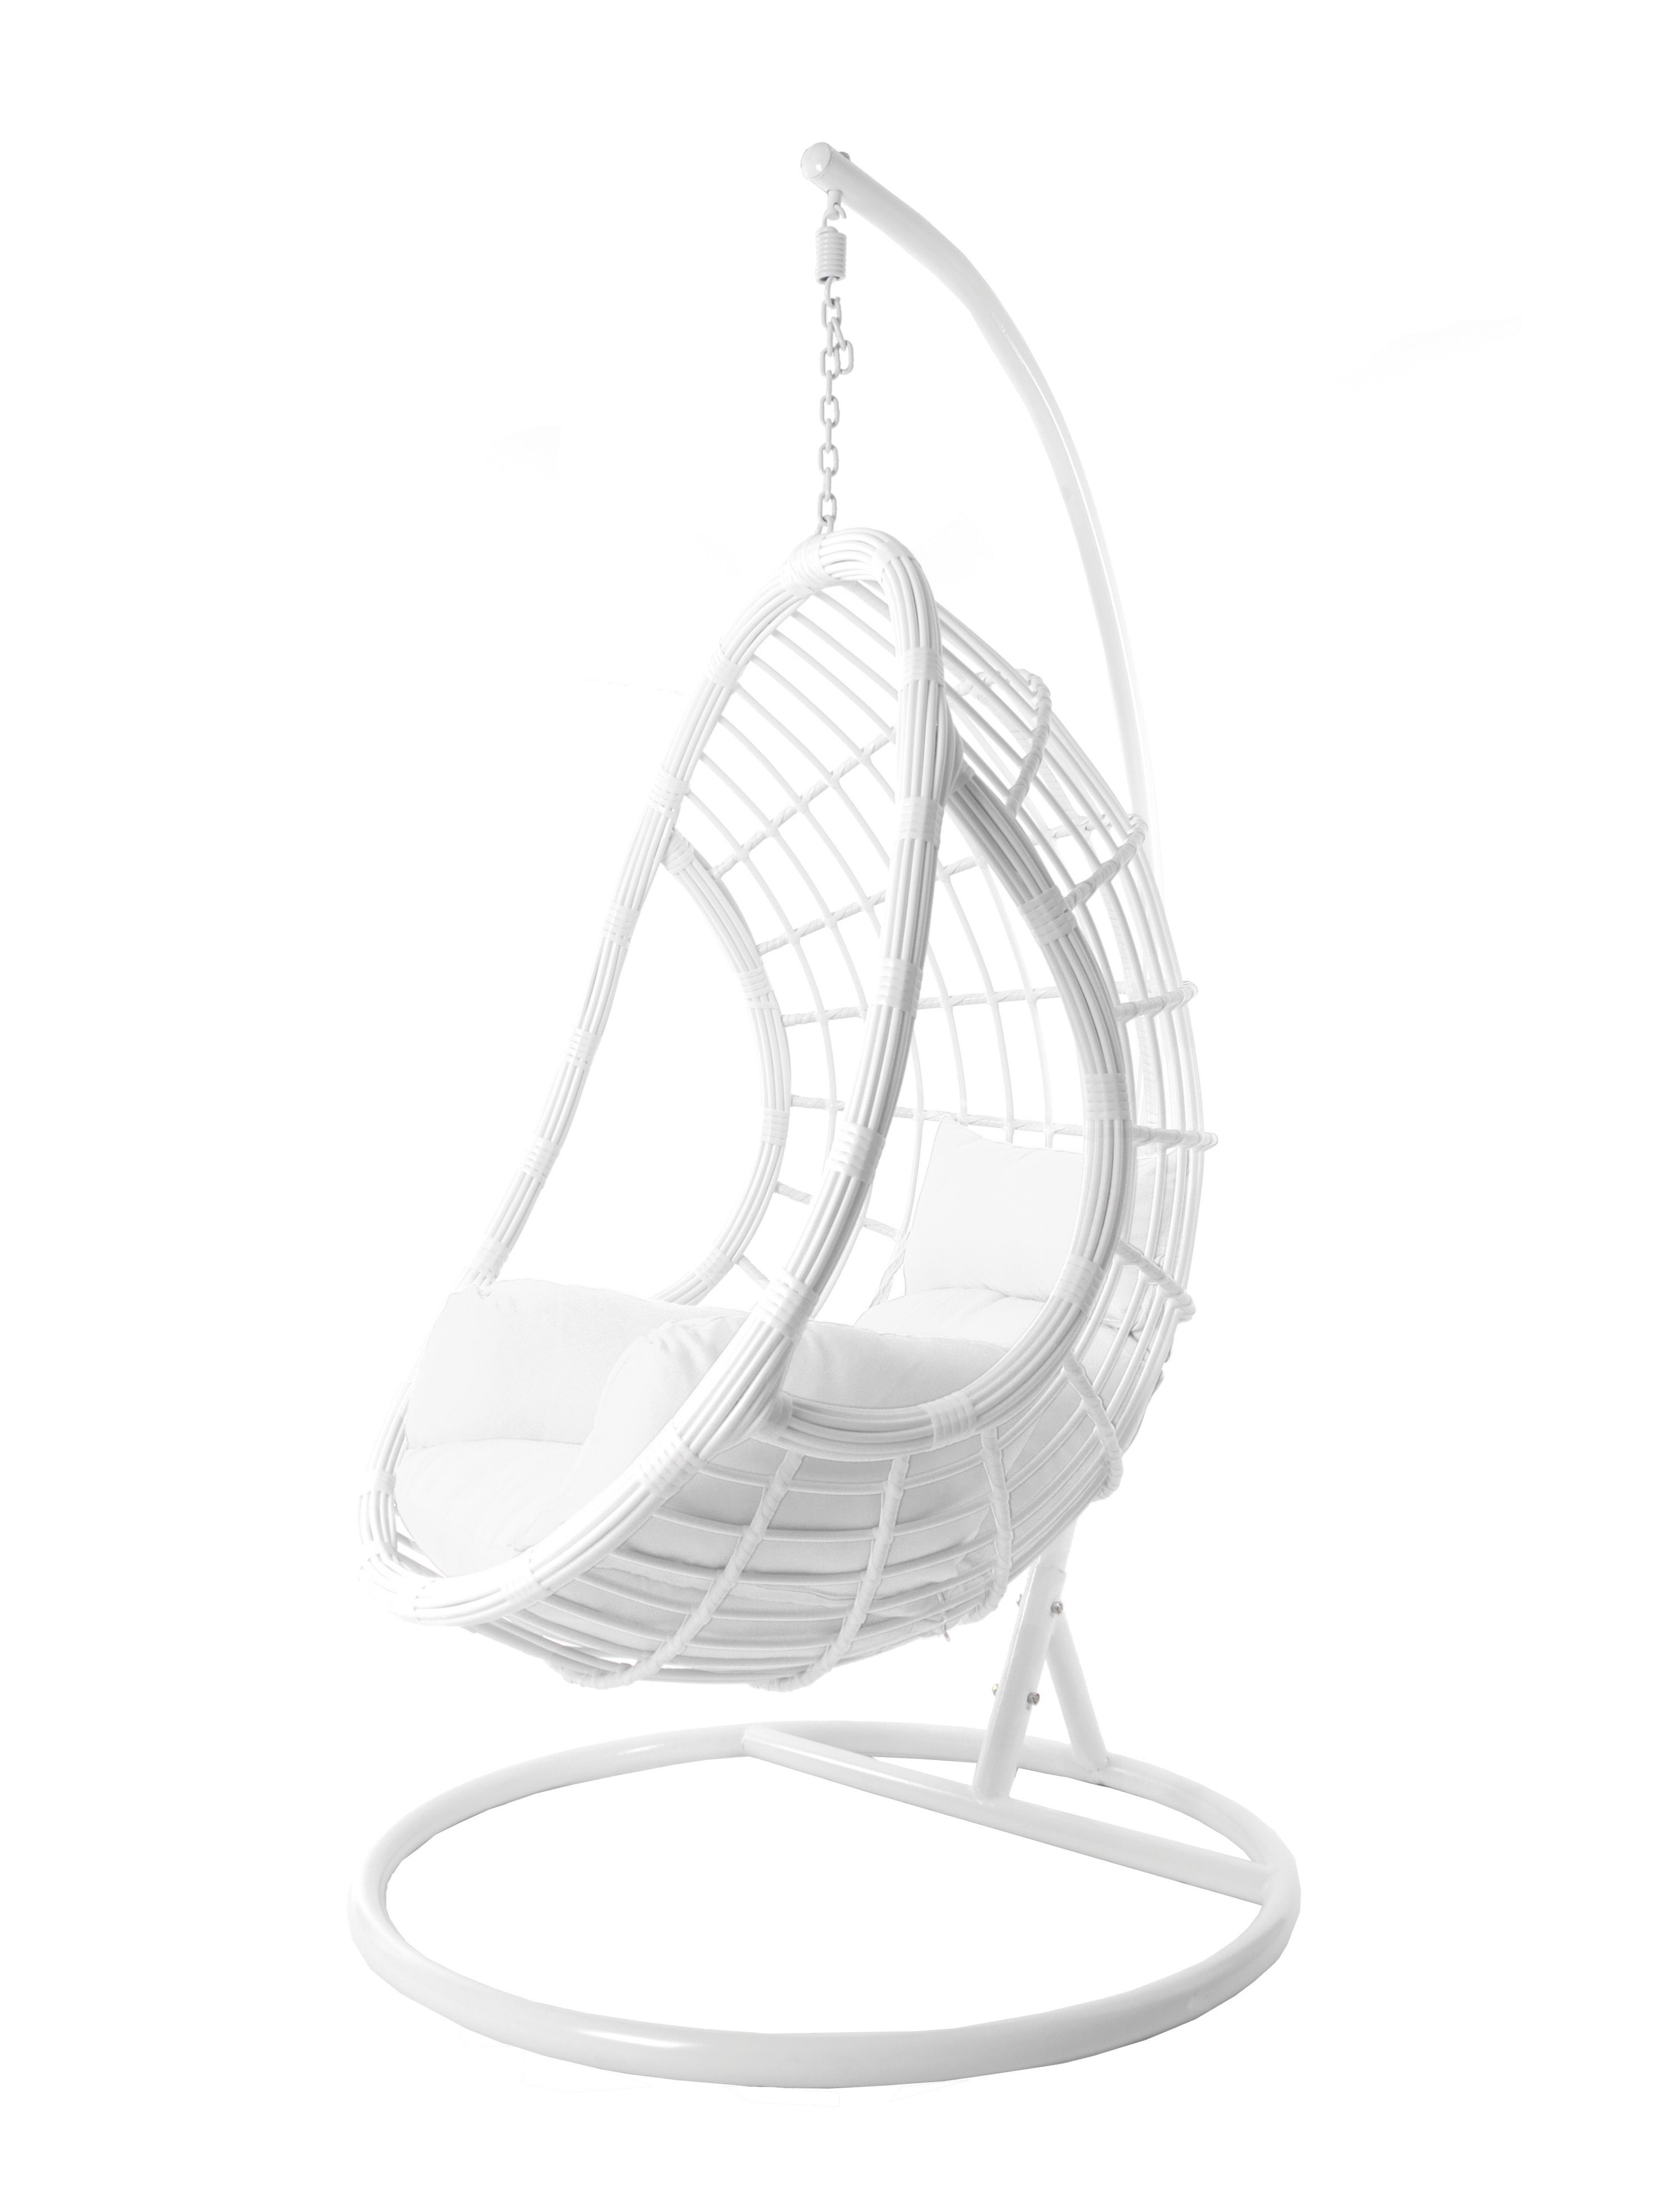 KIDEO Hängesessel Hängesessel Chair, Loungemöbel PALMANOVA Loungesessel Gestell in moderner Kissen, weiß, Hängesessel und weiß, Swing mit